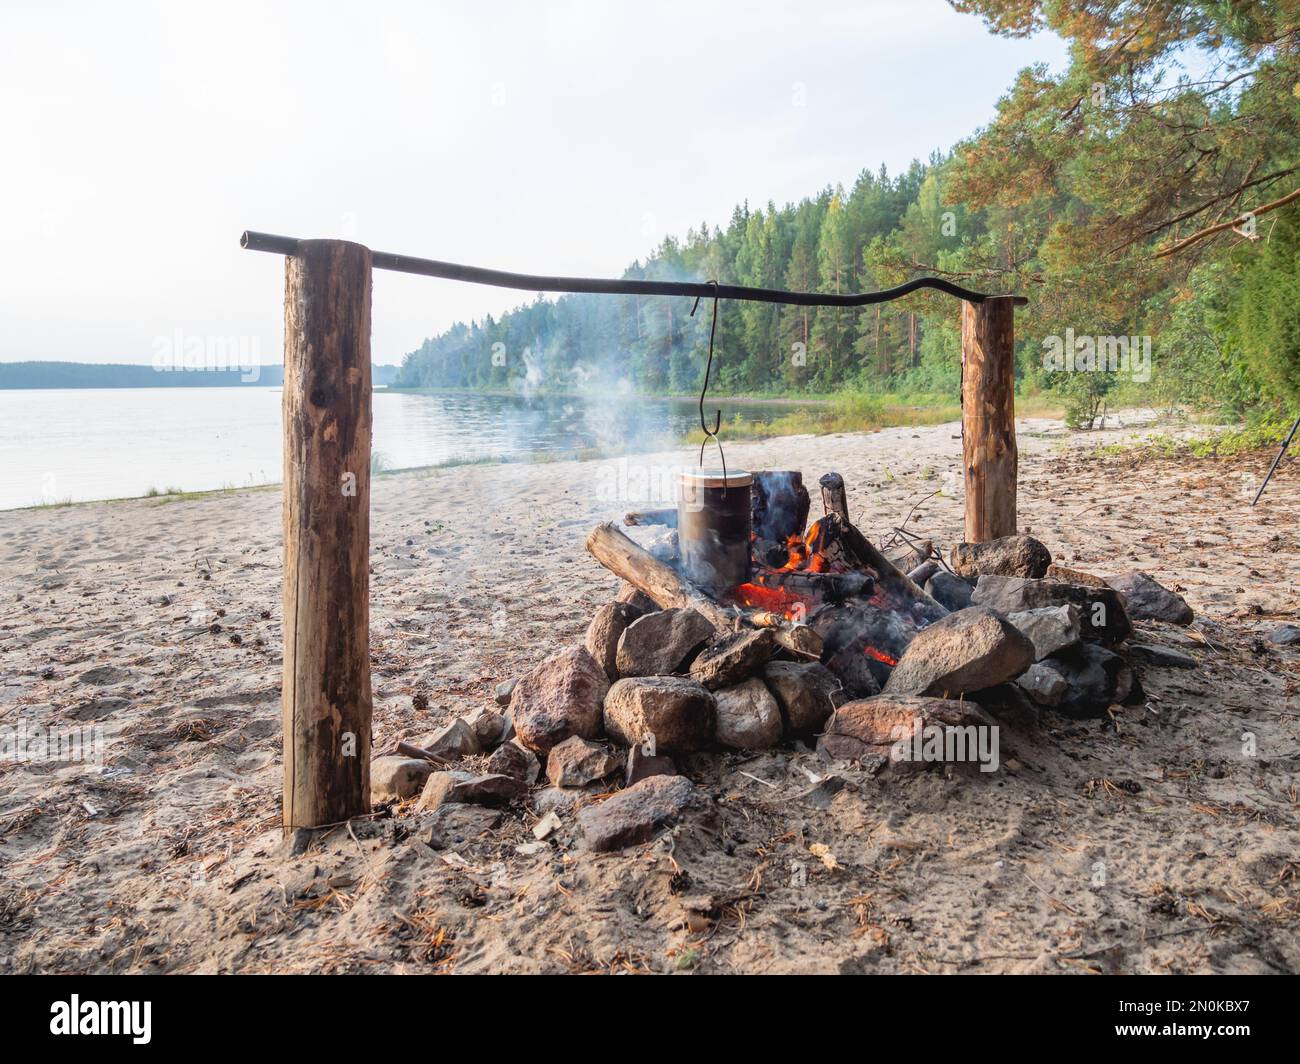 Kochen im Topf über Feuer. Touristisches Camp am Sandstrand des Sees Kenozero. Camping und Wandern in Karelien, Russland. Stockfoto